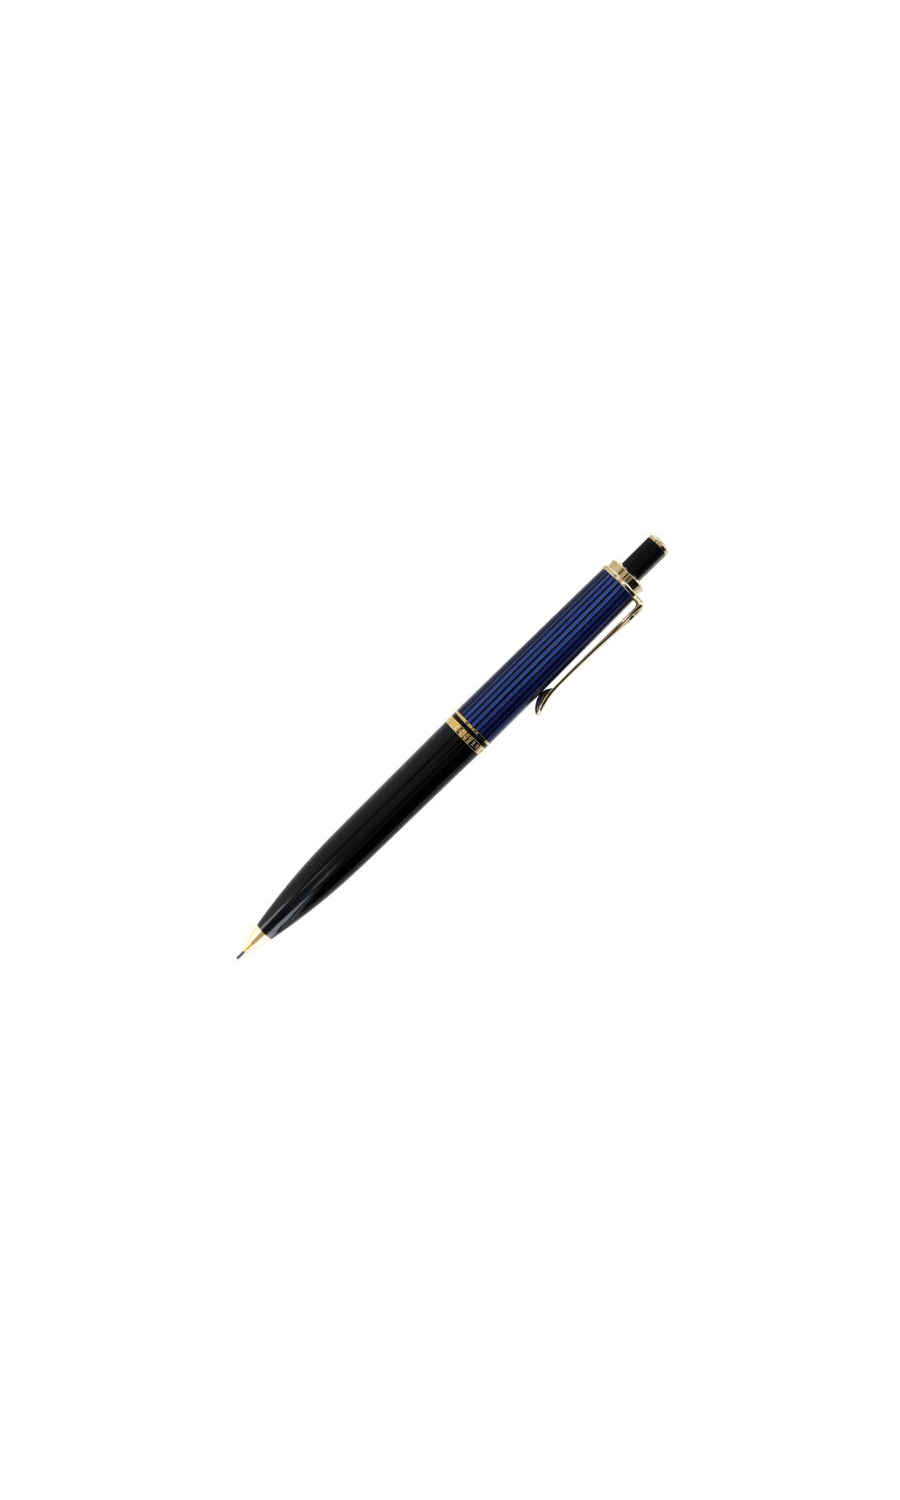 D400 Black/Blue Mechanical Pencil